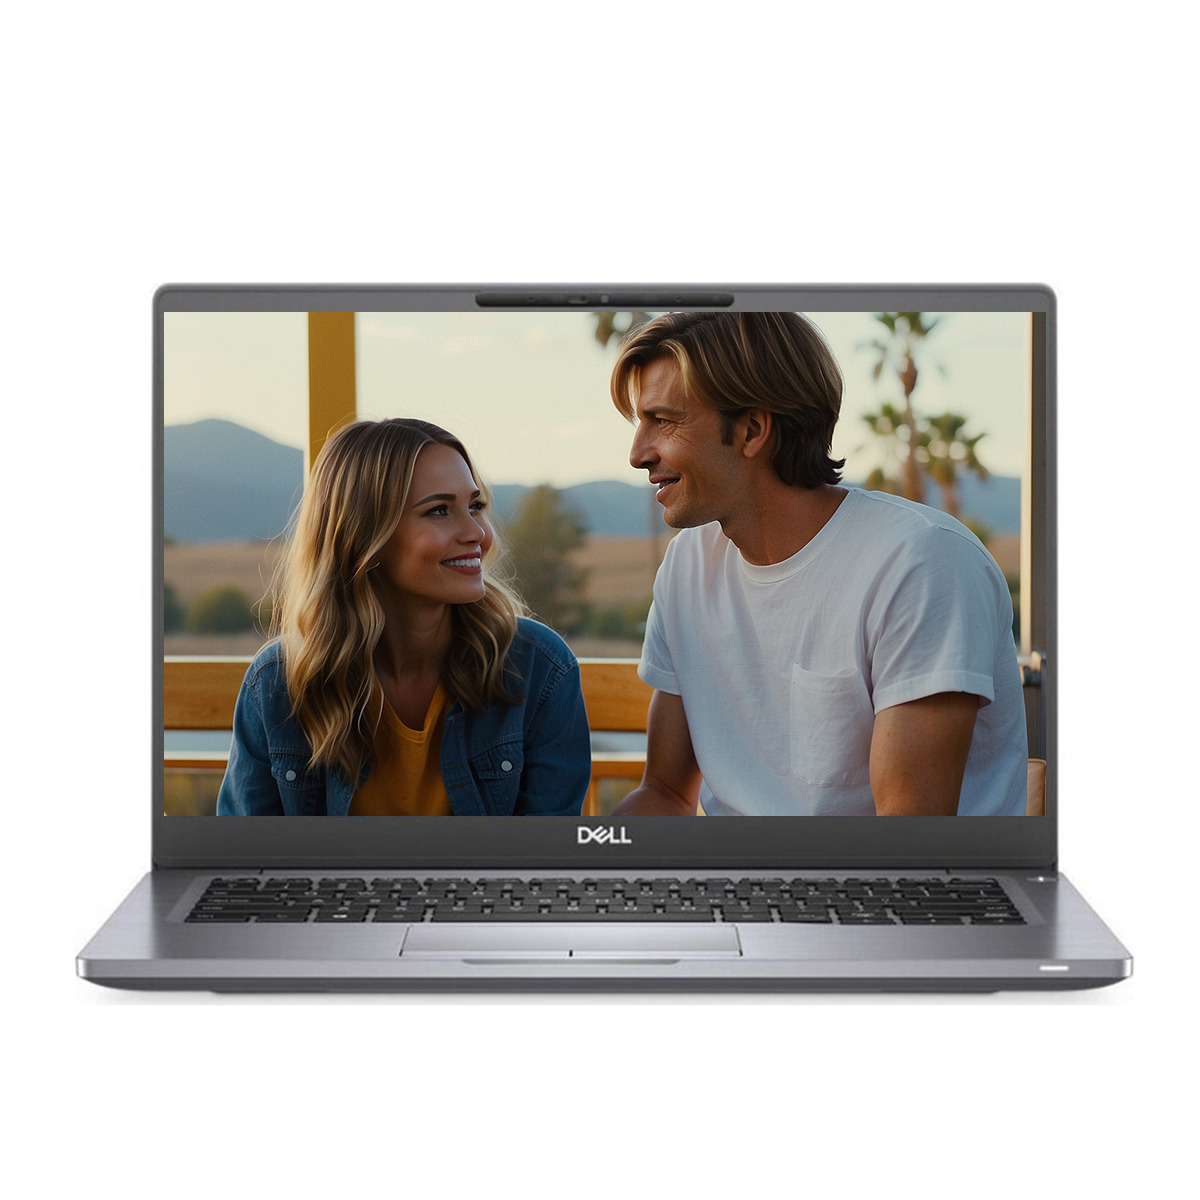 Dell Latitude 7300 - Wydajność i mobilność w jednym Szukasz laptopa, który łączy w sobie wysoką wydajność, kompaktową konstrukcję i elegancki design? Dell Latitude 7300 to idealny wybór dla biznesu i codziennego użytku.